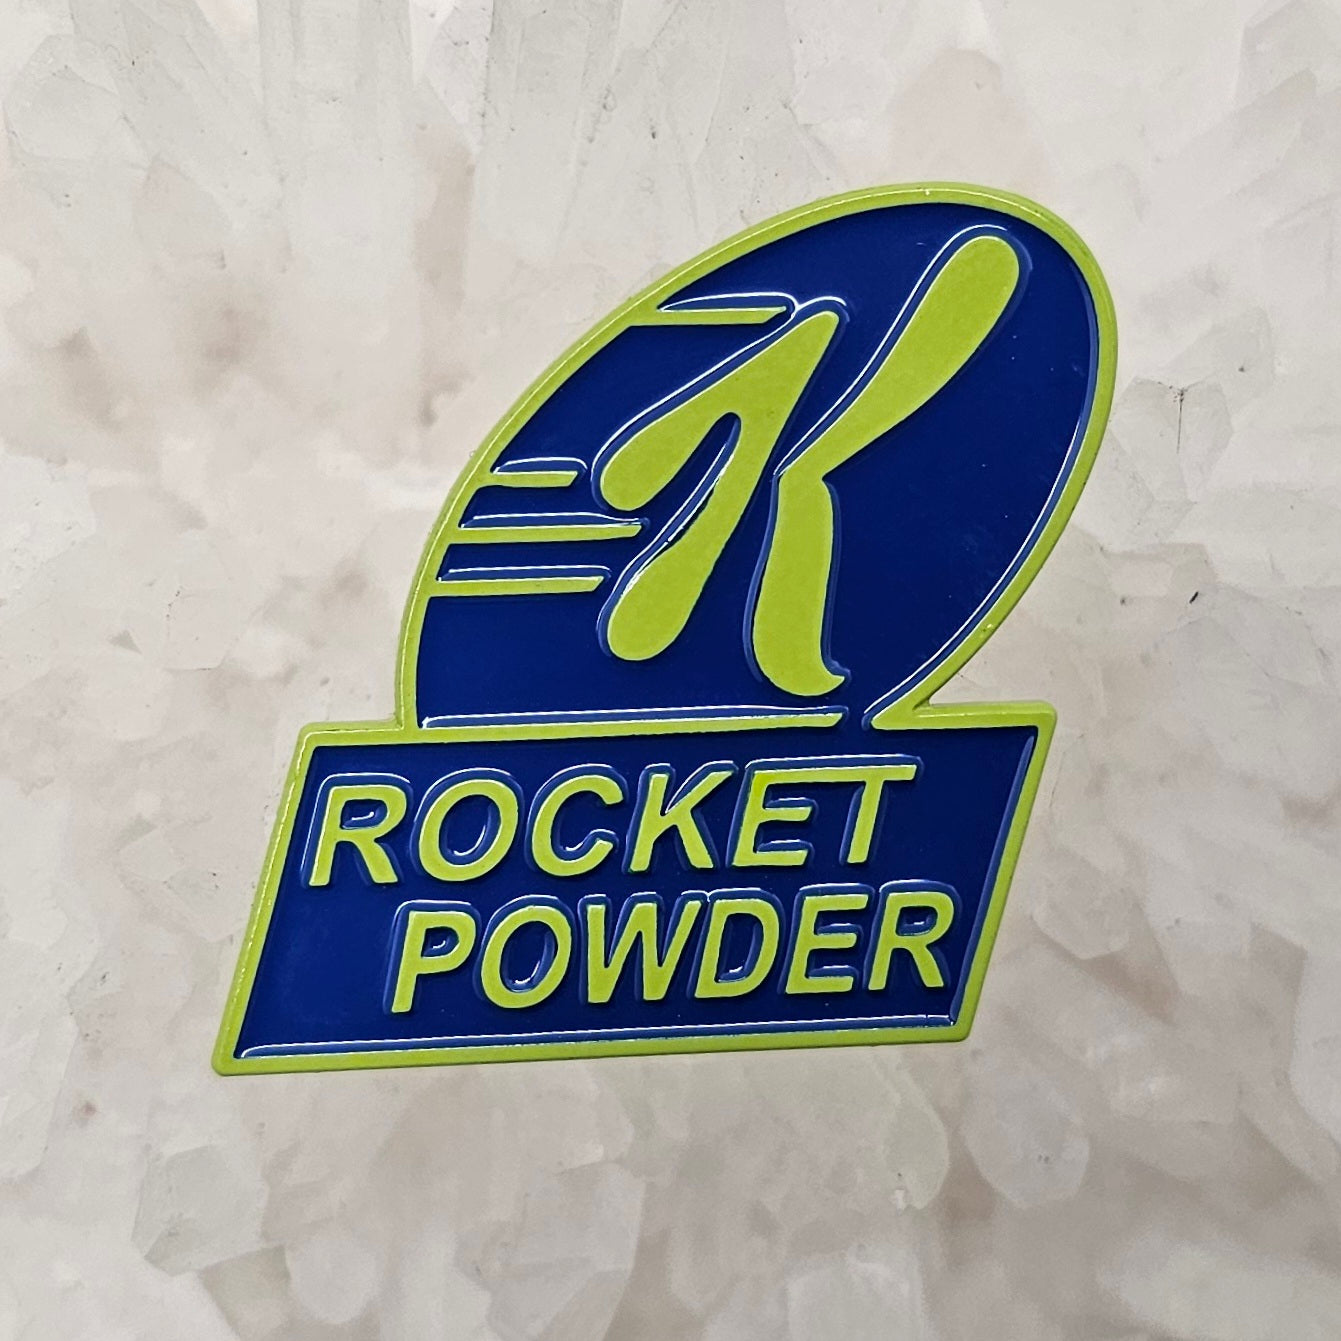 Rocket Powder Power Special K Skateboarding 90s Cartoon Mashup Enamel Pins Hat Pins Lapel Pin Brooch Badge Festival Pin